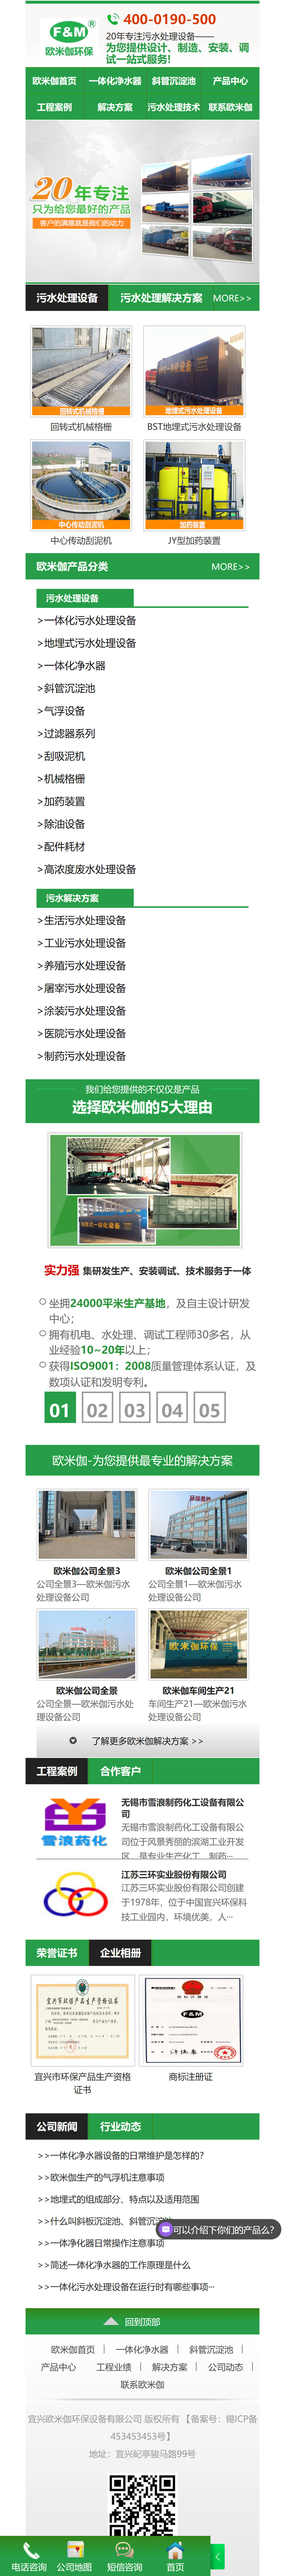 江苏欧米伽污水处理设备营销型网站 手机端预览图